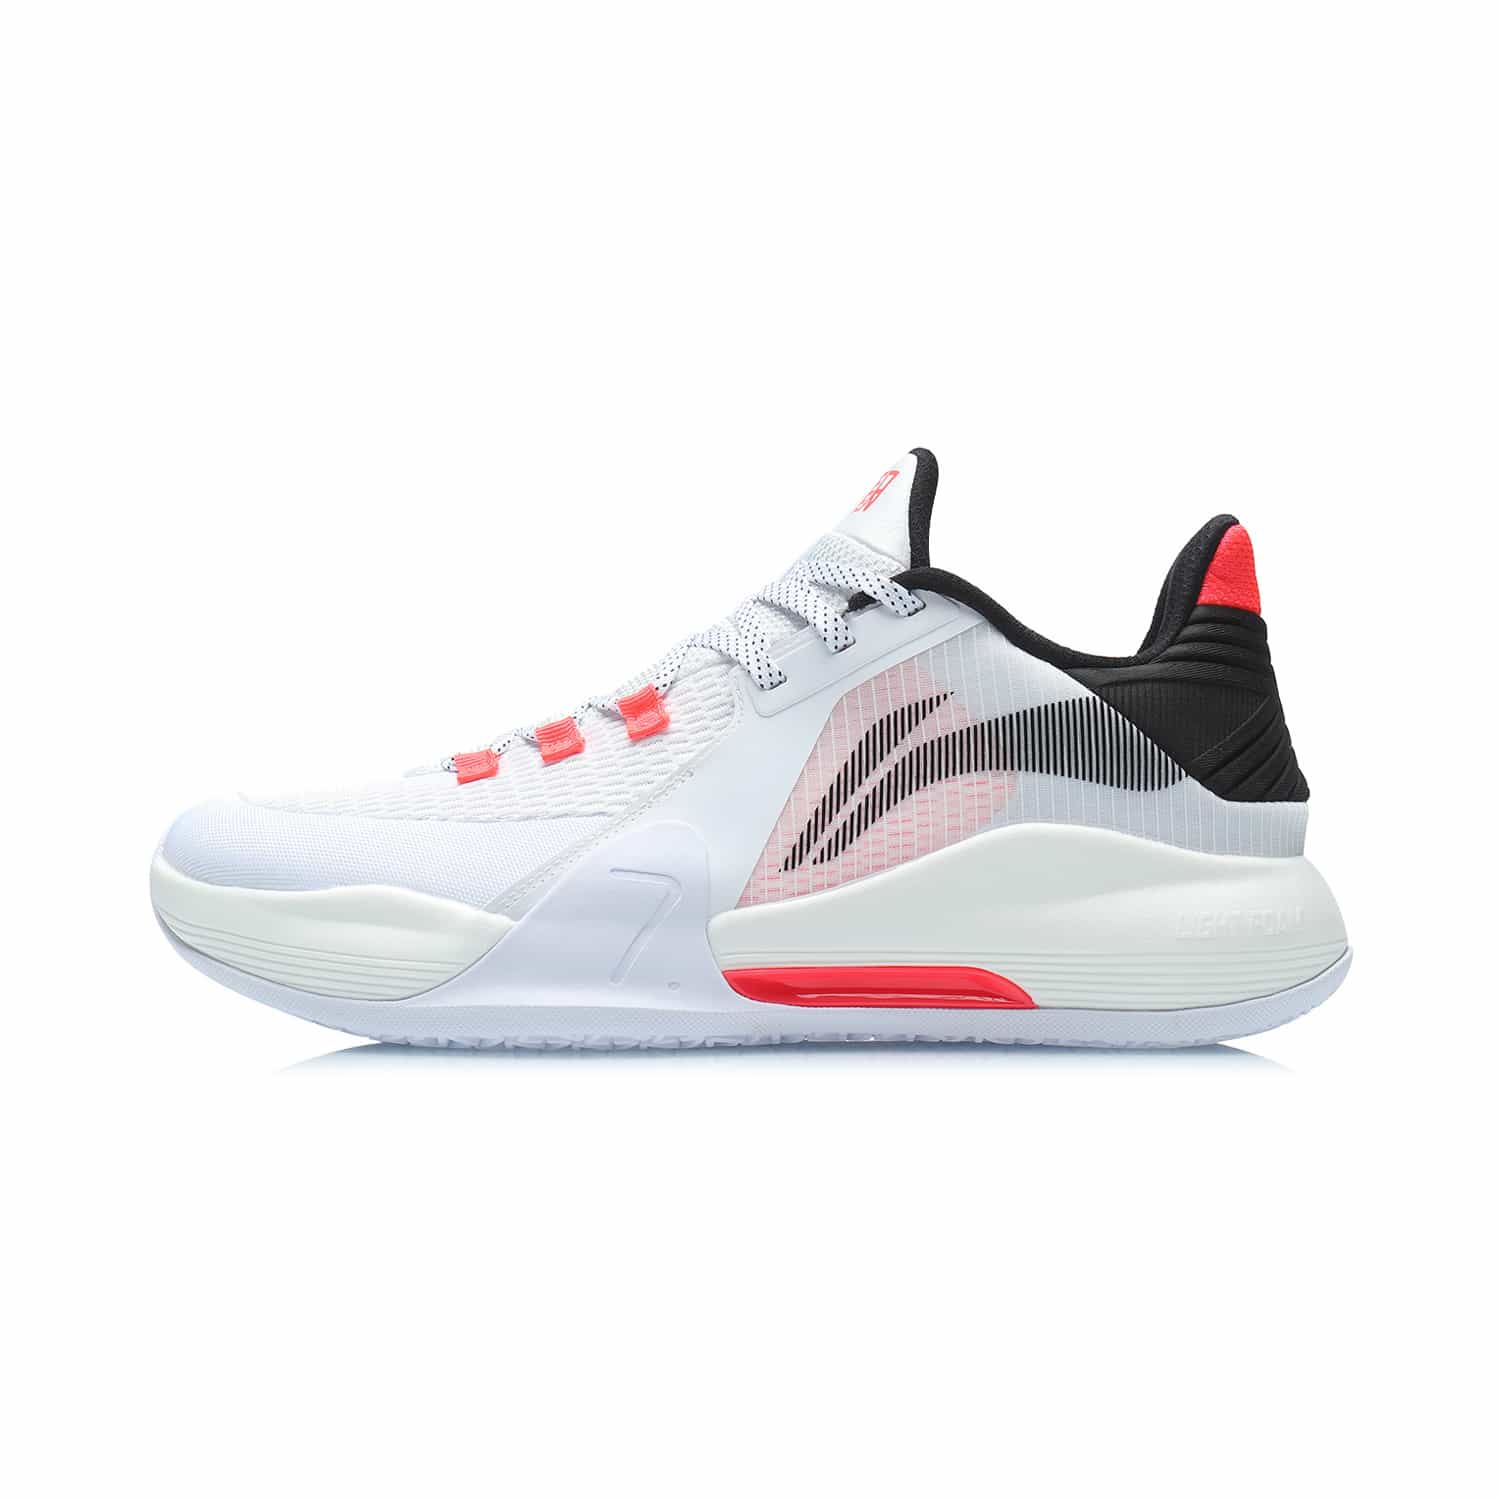 閃擊VII 實戰籃球鞋 - 標準白/螢光焰紅